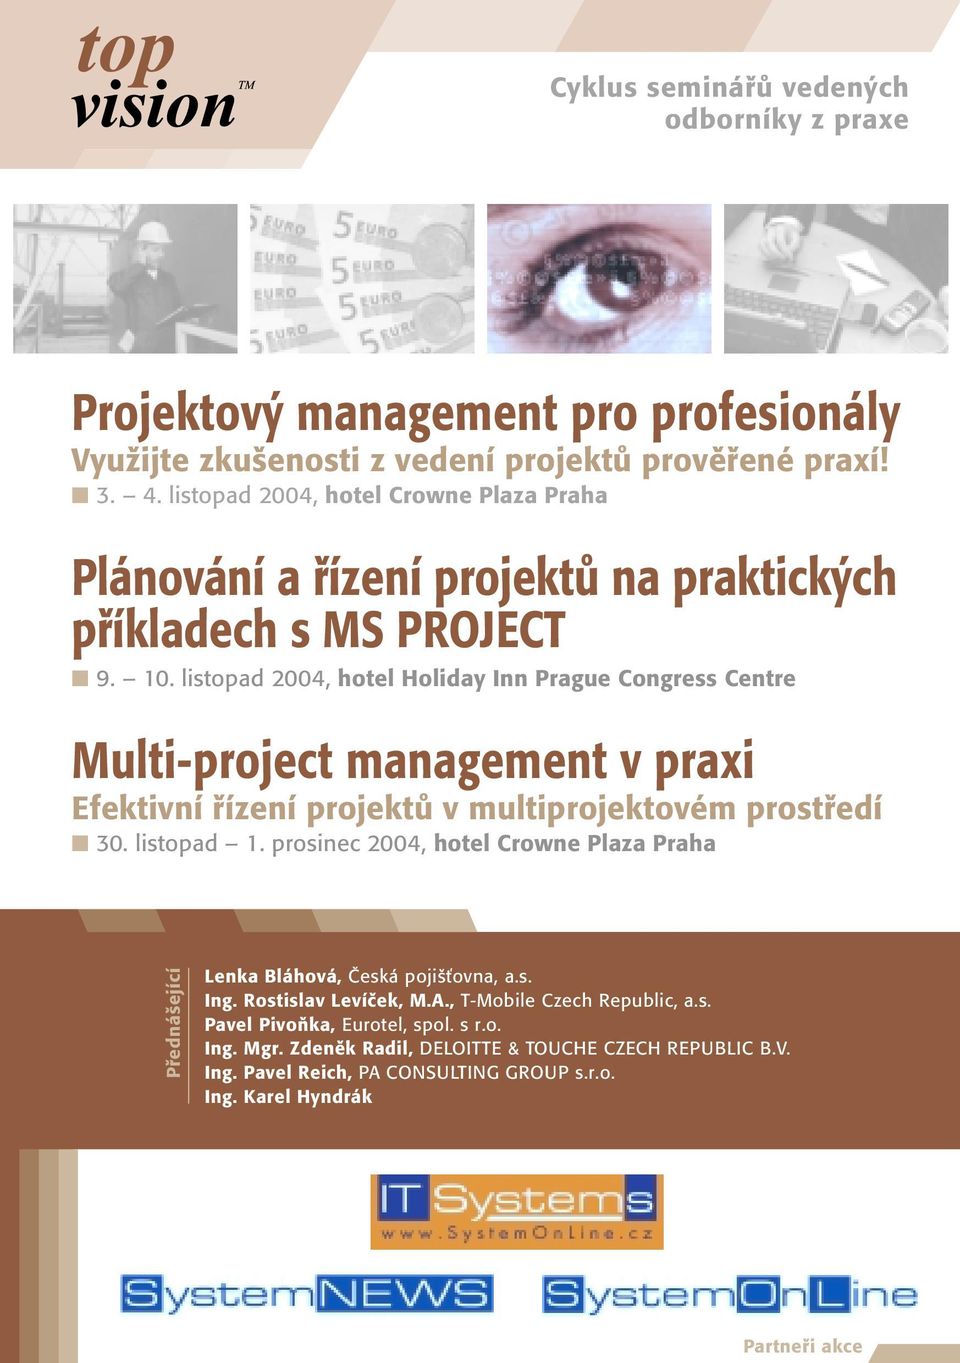 listopad 2004, hotel Holiday Inn Prague Congress Centre Multi-project management v praxi Efektivní fiízení projektû v multiprojektovém prostfiedí 30. listopad 1.